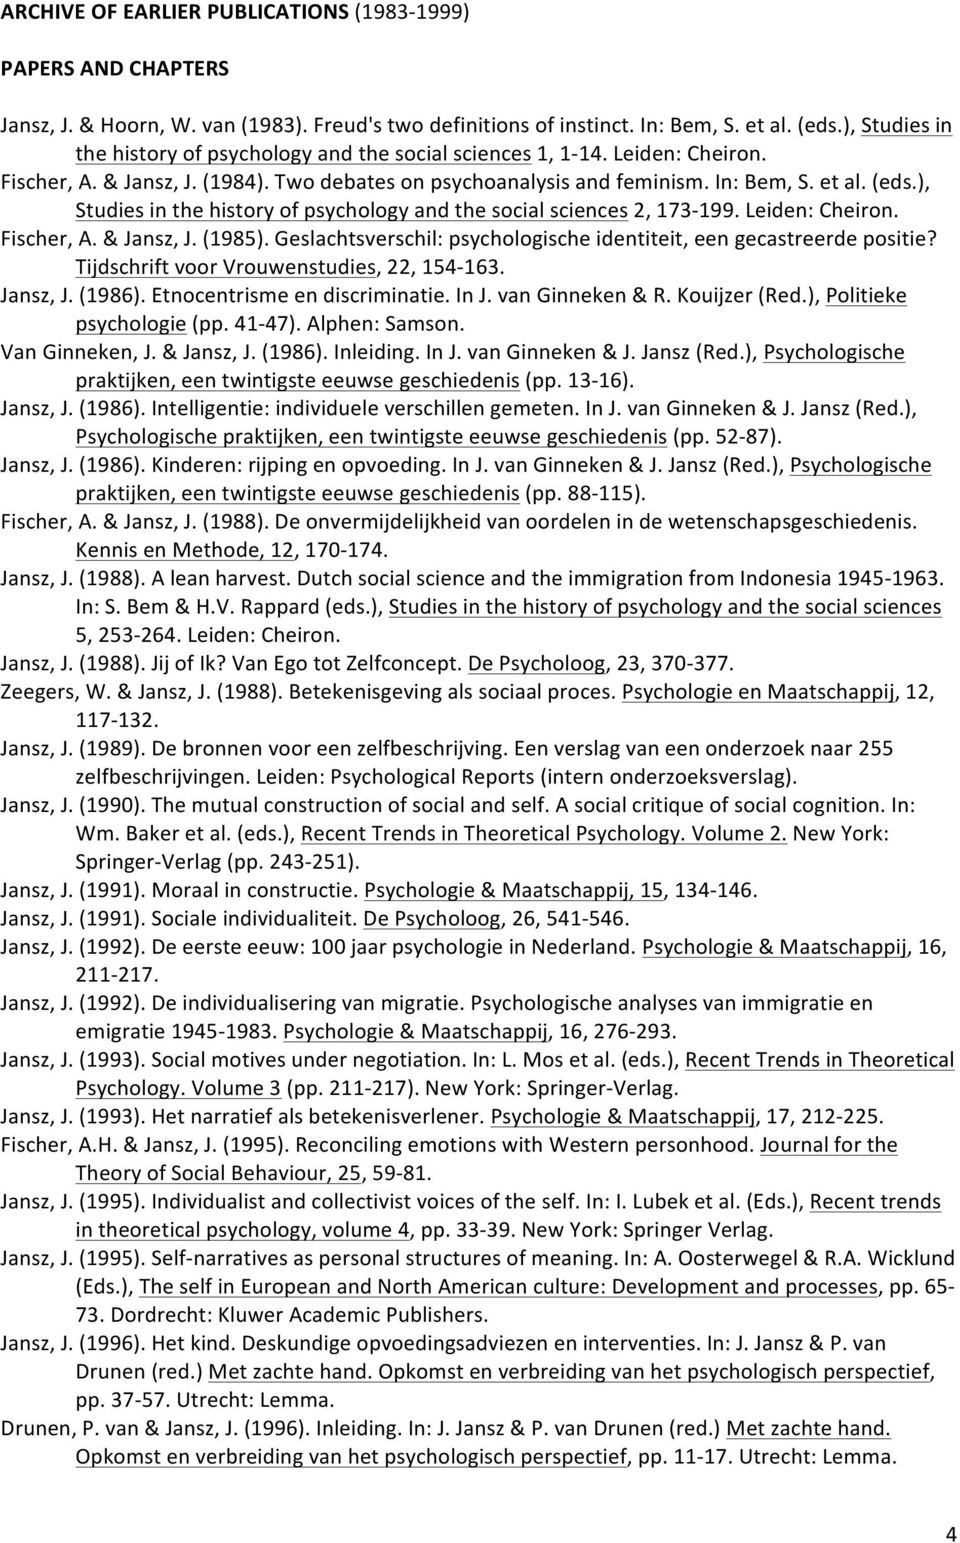 ), Studies in the history of psychology and the social sciences 2, 173-199. Leiden: Cheiron. Fischer, A. & Jansz, J. (1985). Geslachtsverschil: psychologische identiteit, een gecastreerde positie?